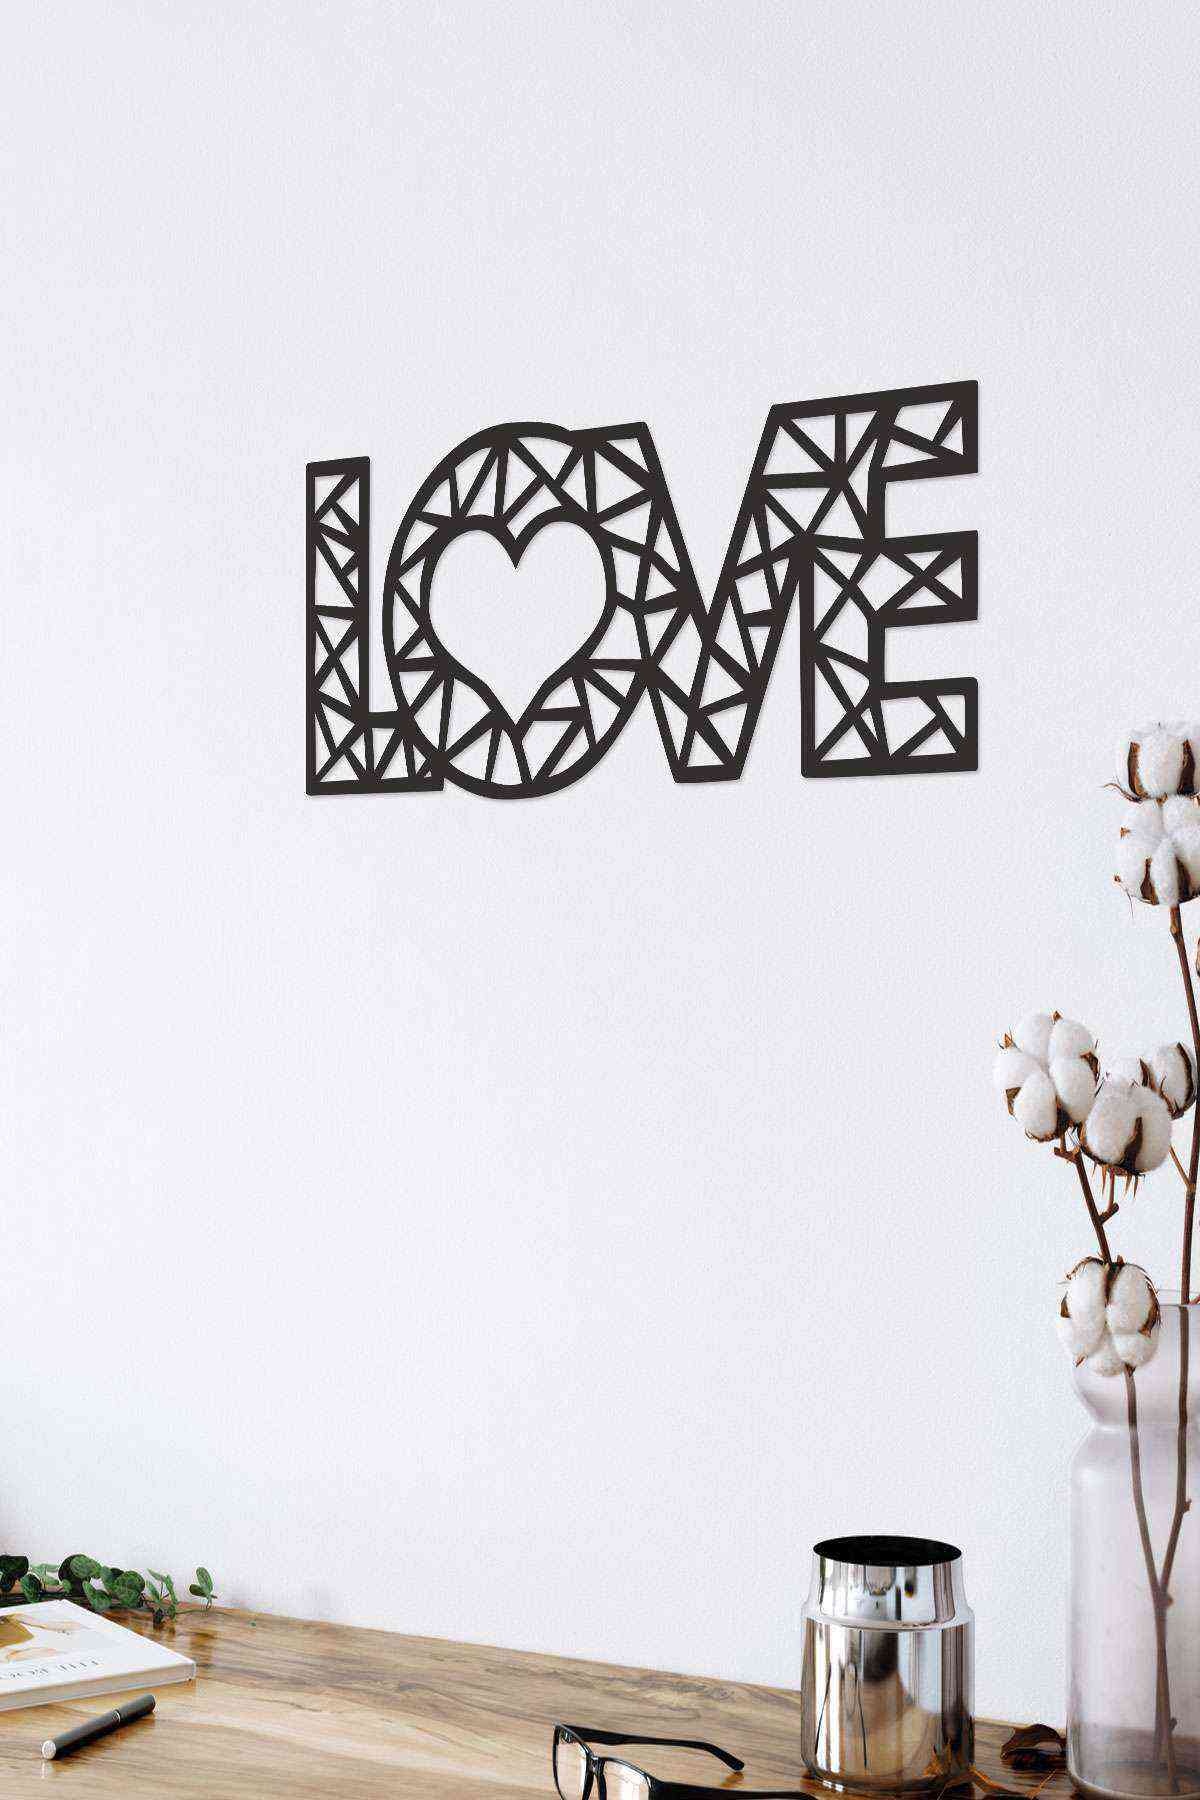 Love Aşk 3D Mdf Tablo Evinize Ofisinize Yeni Tarz Wall Art